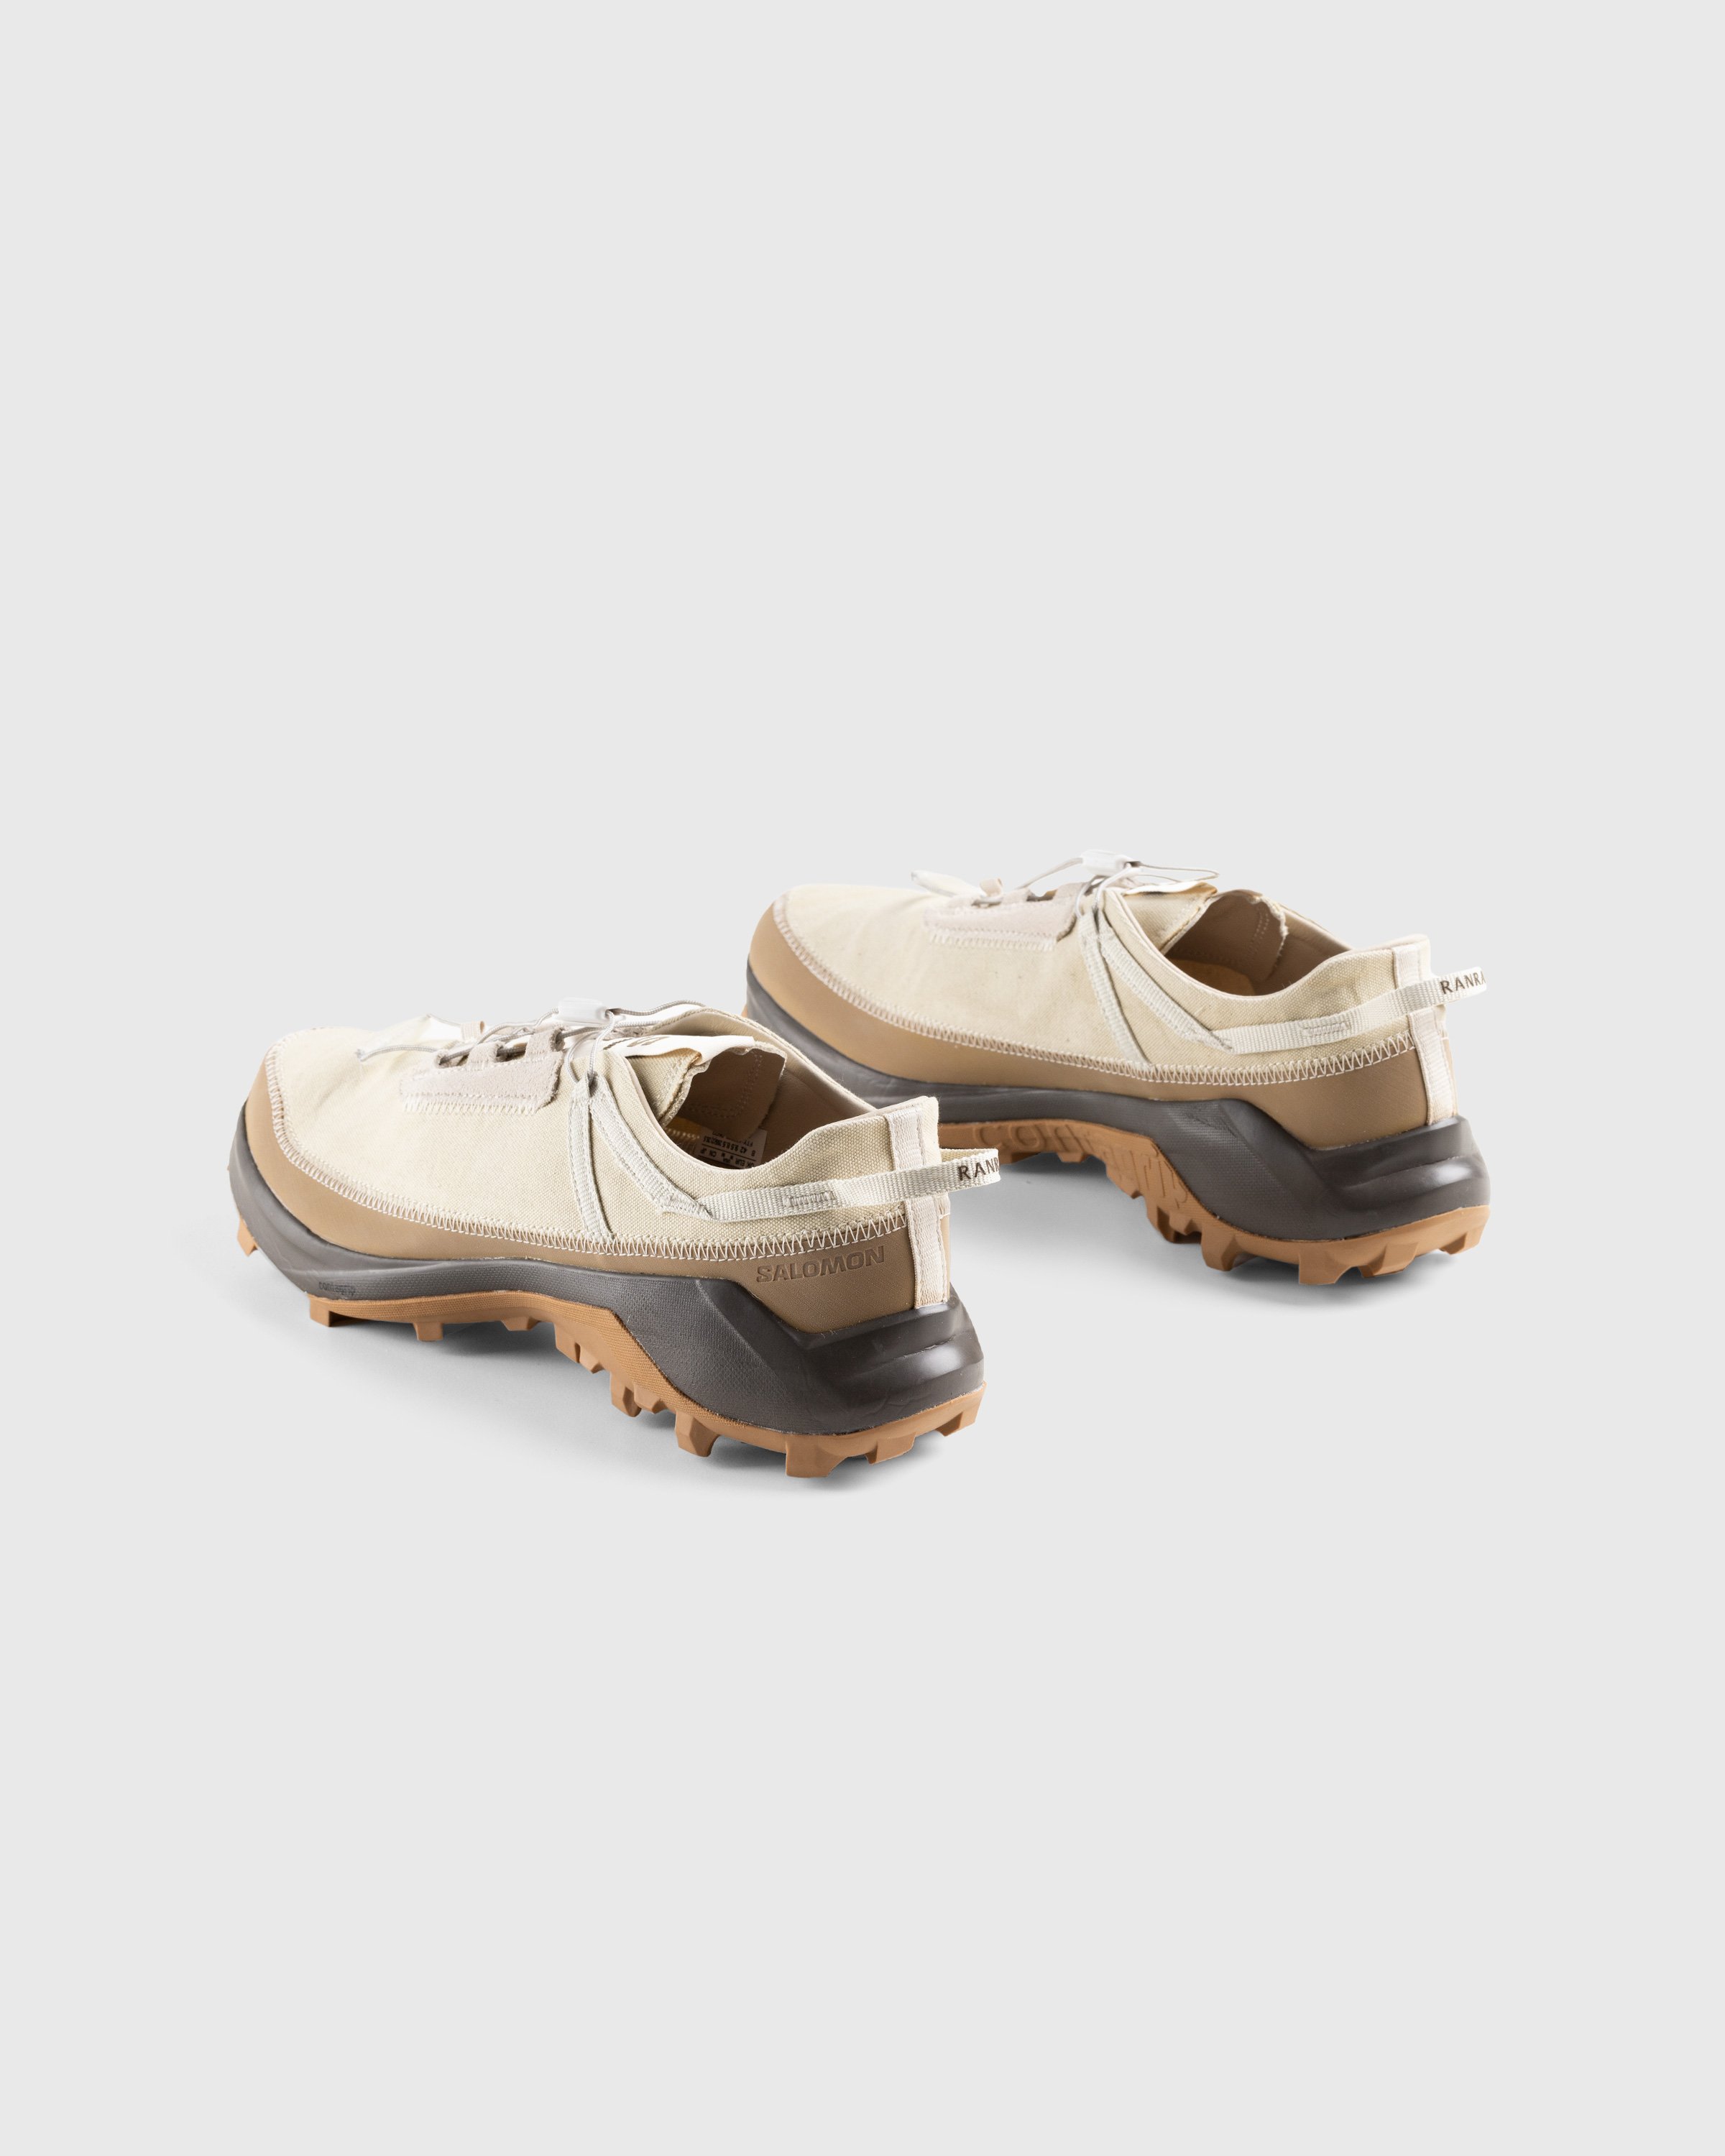 RANRA x Salomon - Cross Pro Turtledove - Footwear - Beige - Image 4